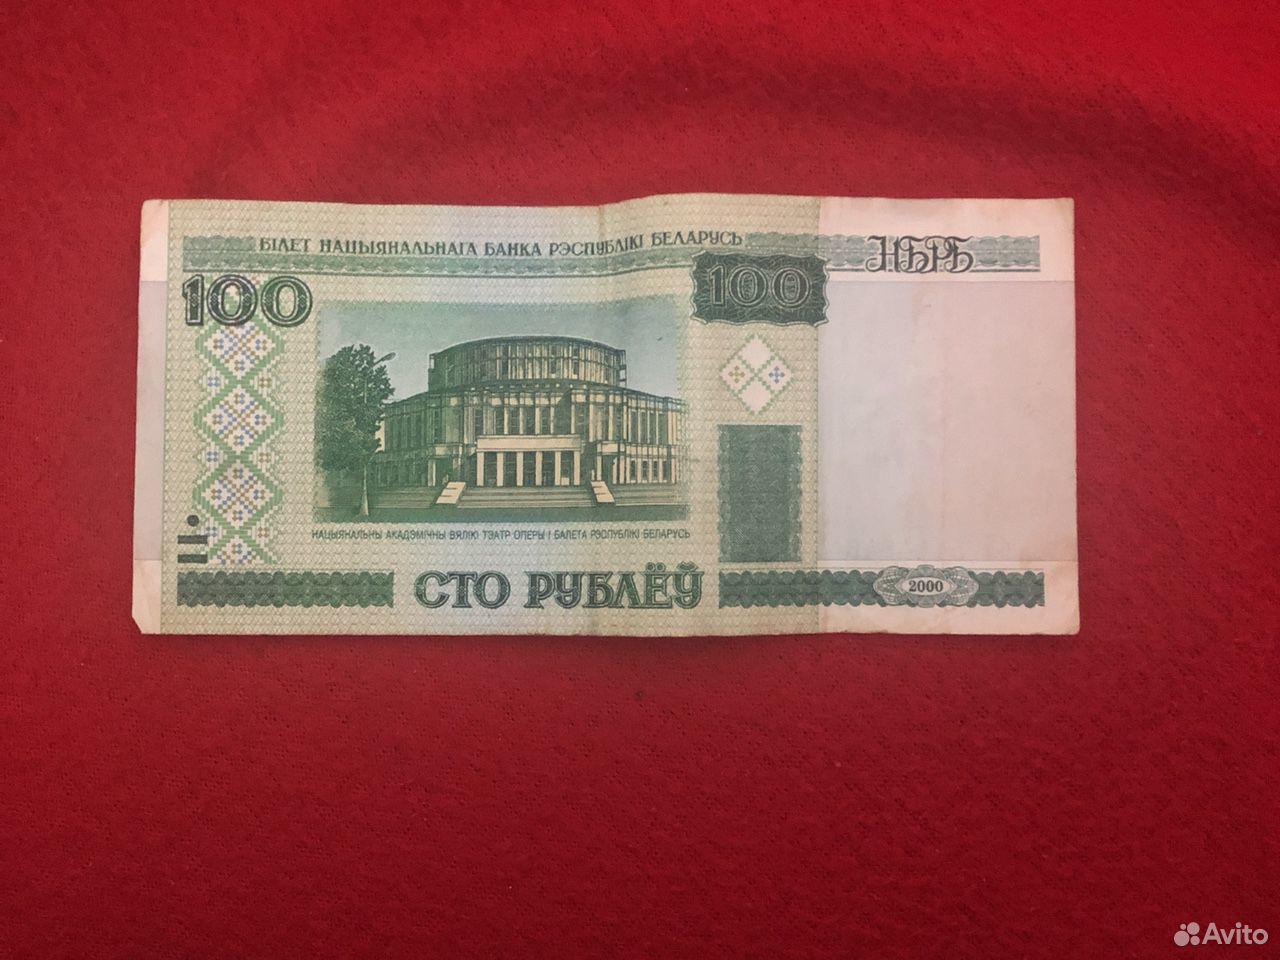 100 белорусских рублей фото